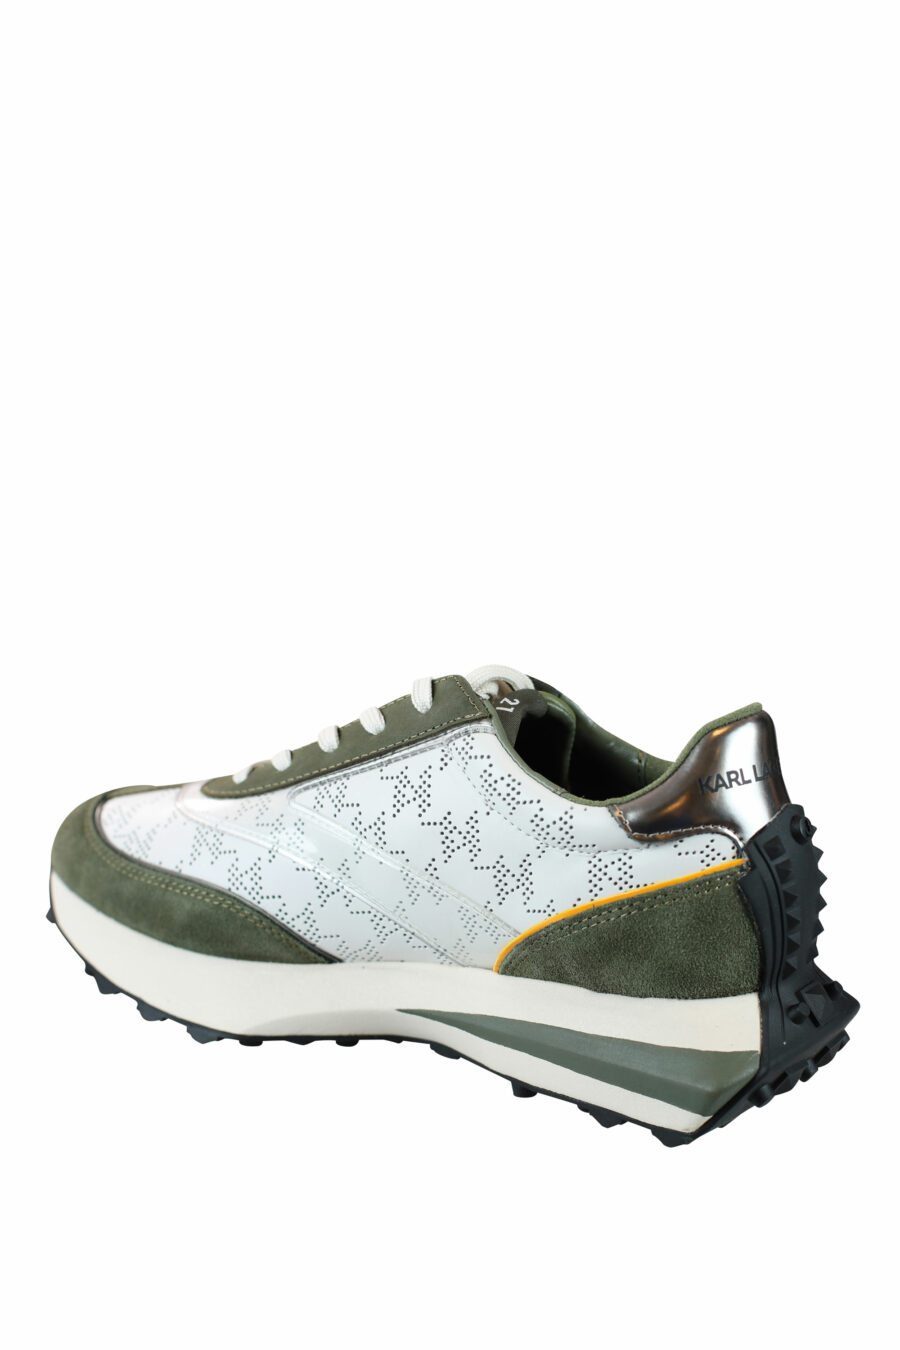 Zapatillas "Zone" blancas con verde - IMG 0031